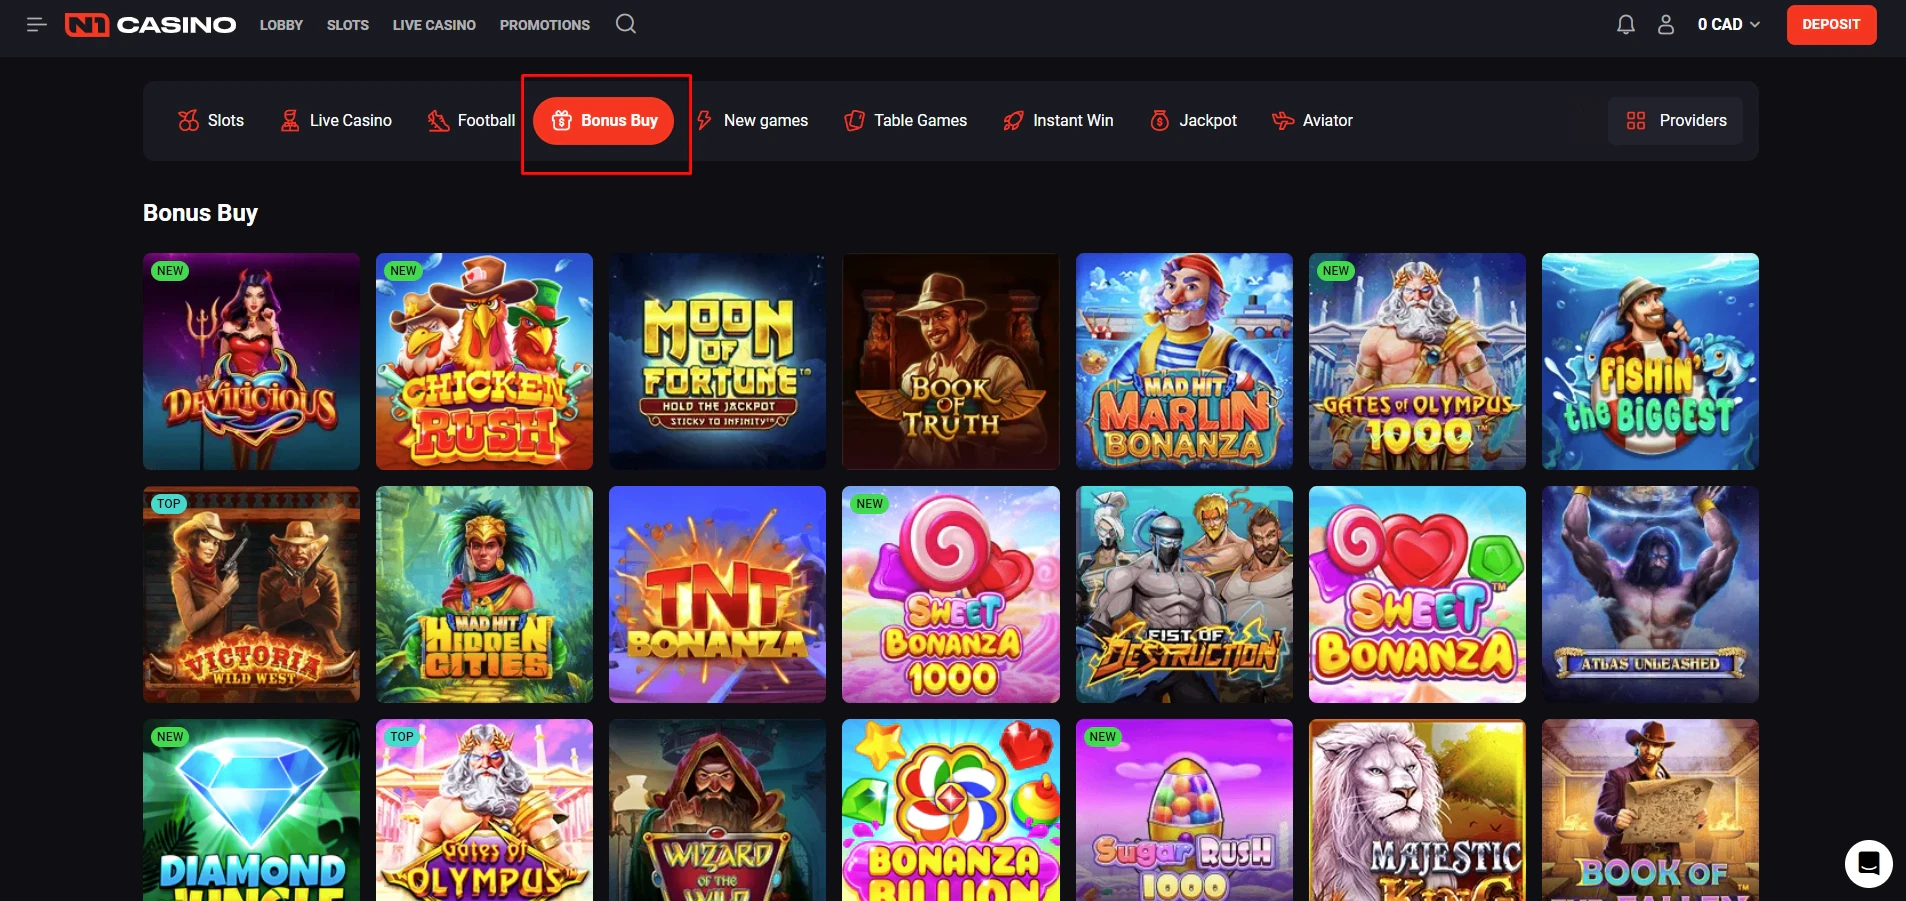 N1 Casino Bonus Buy Games